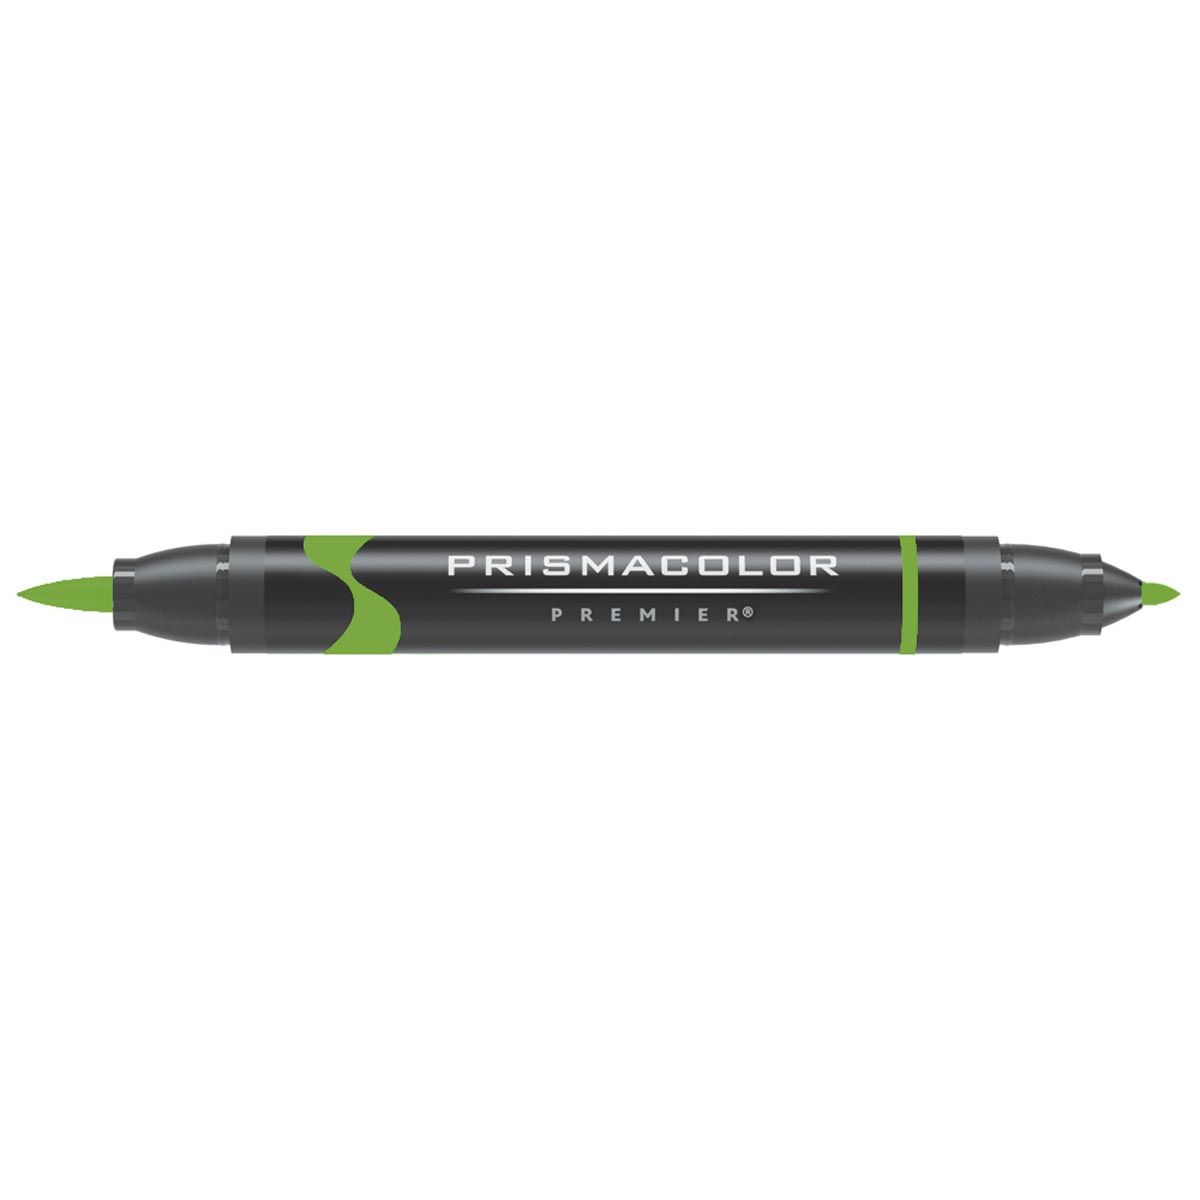 Prismacolor Brush Tip Marker - Light Olive Green